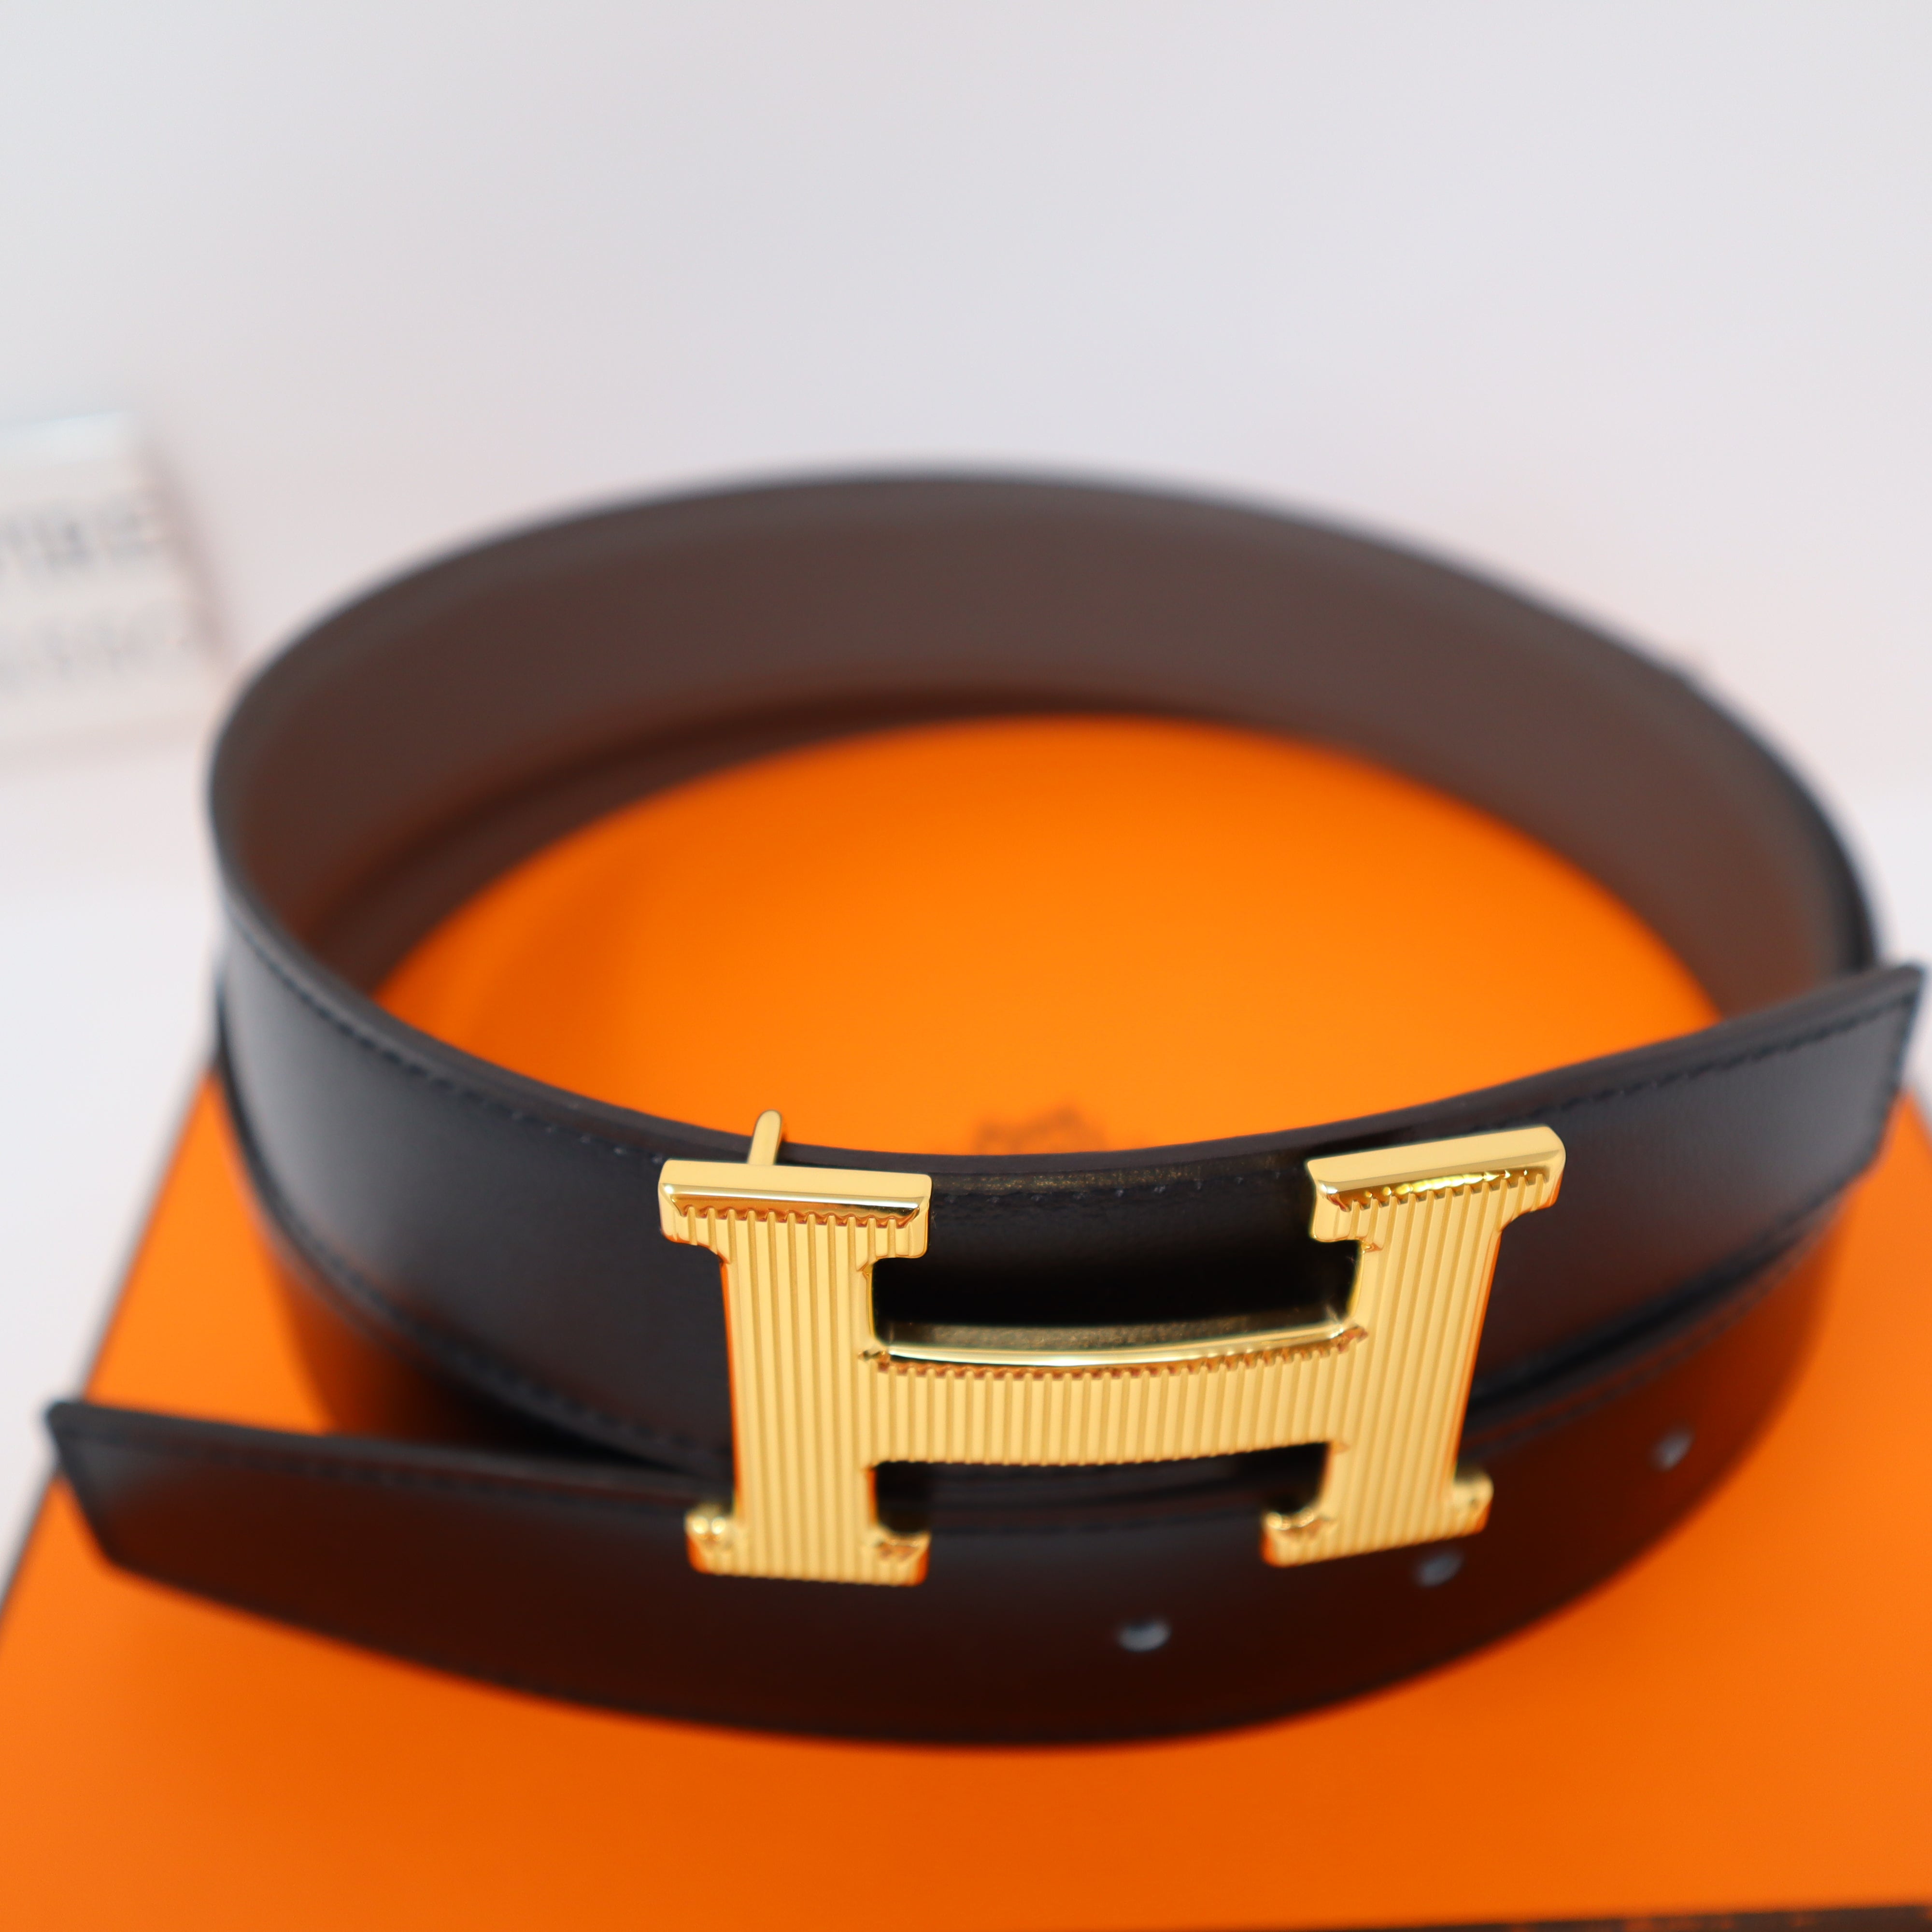 Royal belt buckle & Leather strap 32 mm